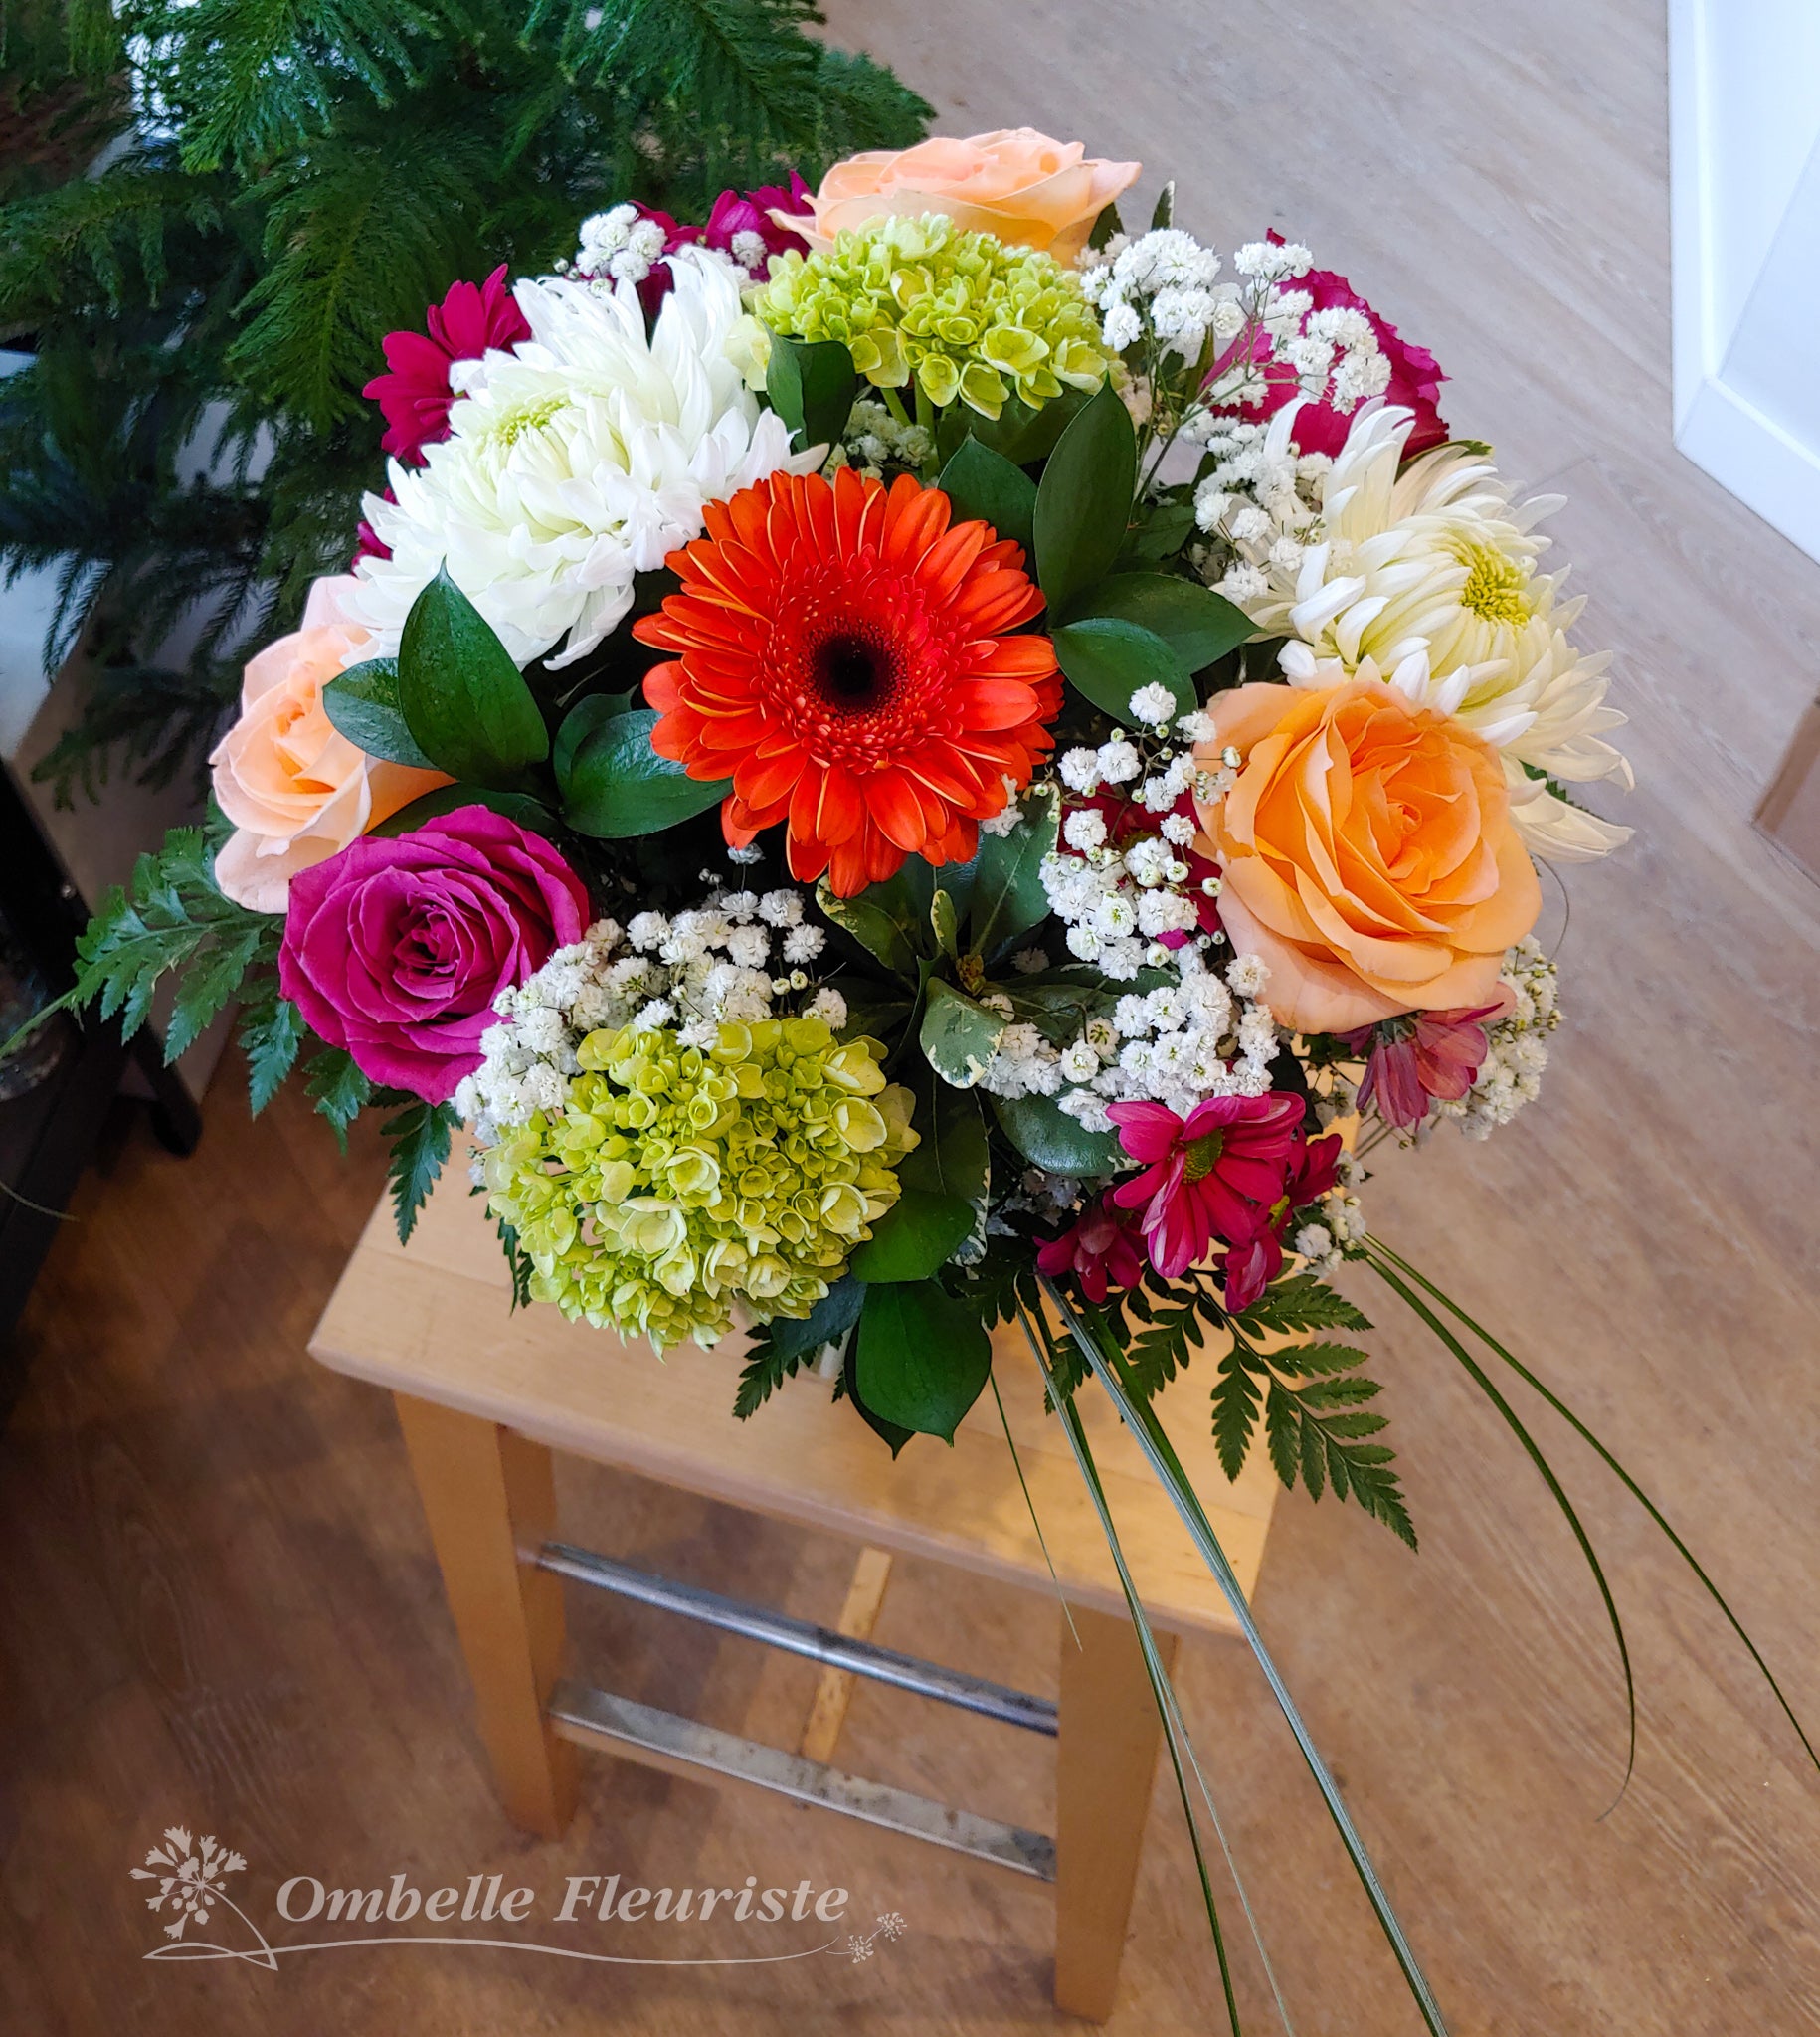 Ombelle Fleuriste - Bouquet de fleurs Lyane